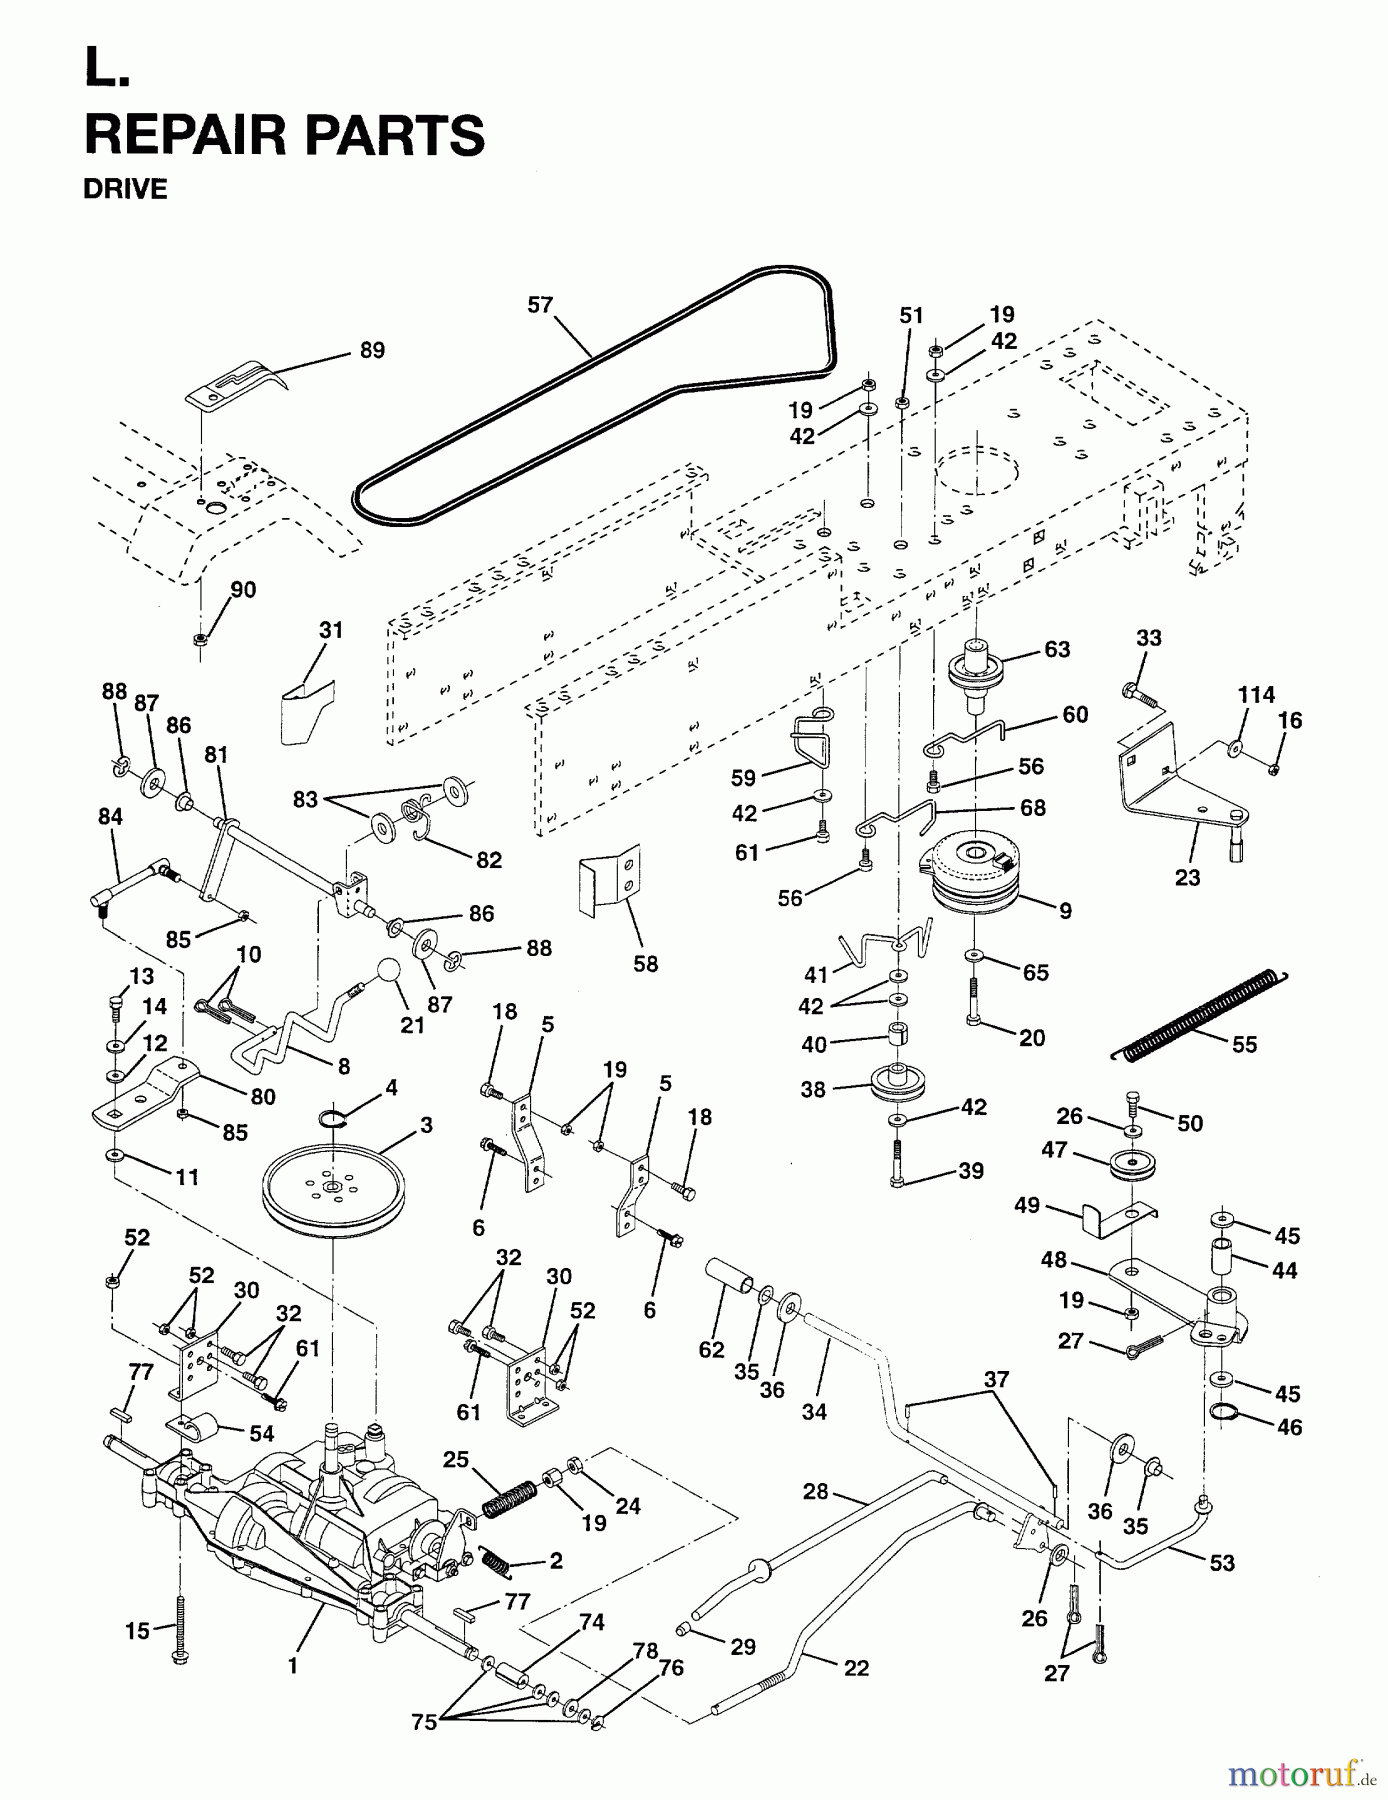  Jonsered Rasen  und Garten Traktoren LT15 (954820221) - Jonsered 42